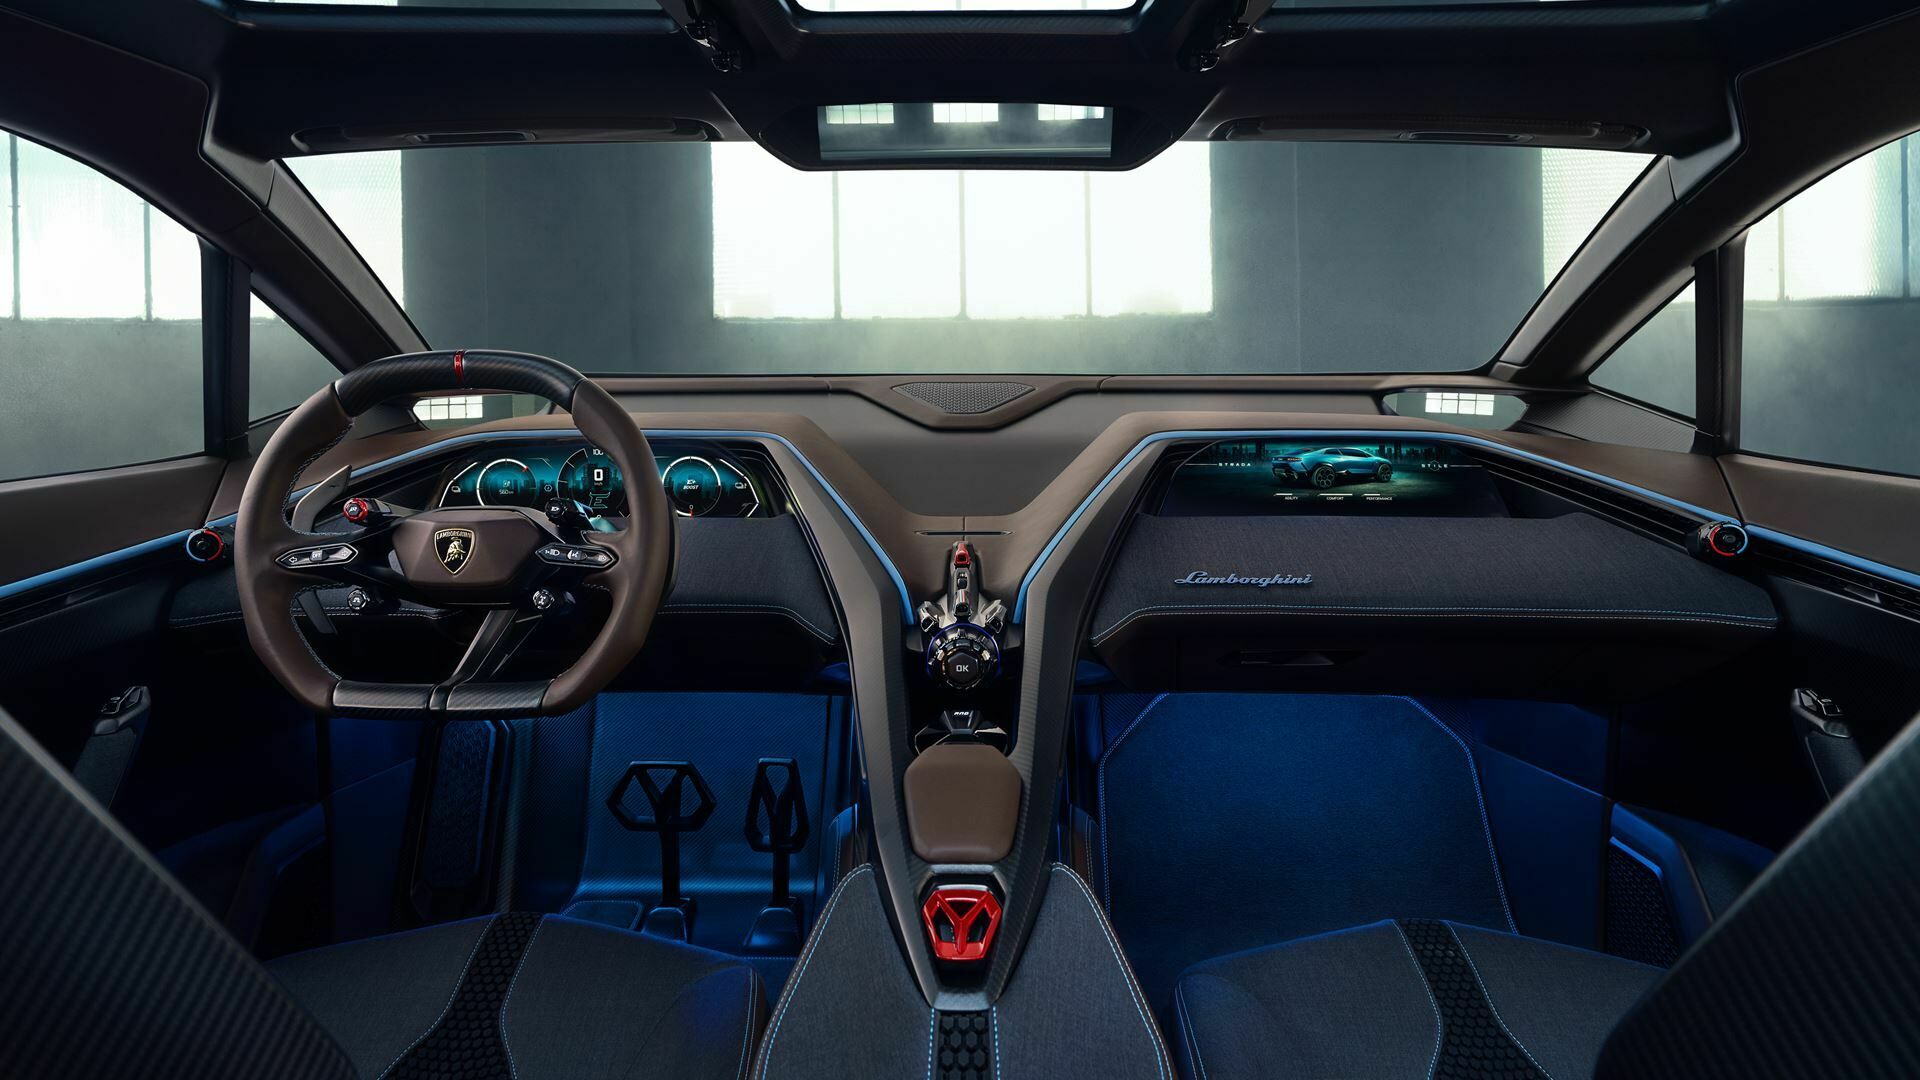 Lamborghini Lanzador concept: the visionary, rebel, Ultra GT